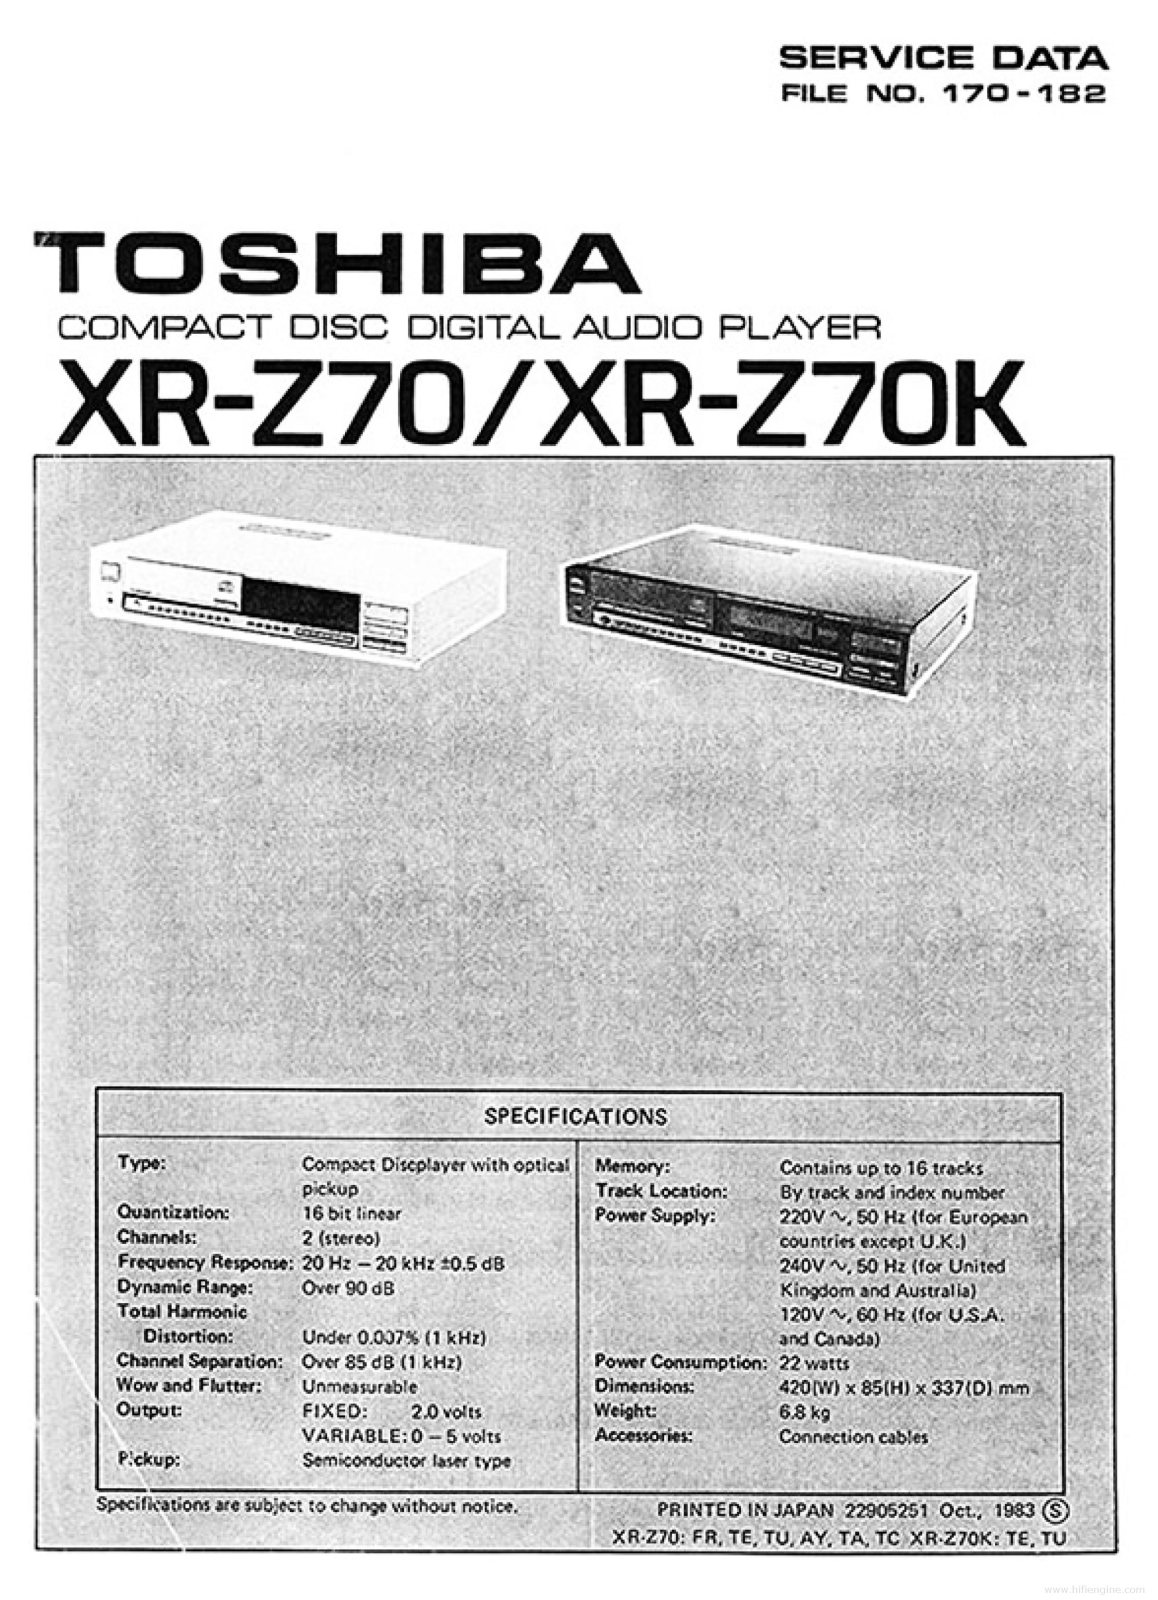 Toshiba xr-z70, xr-z70k Service Manual